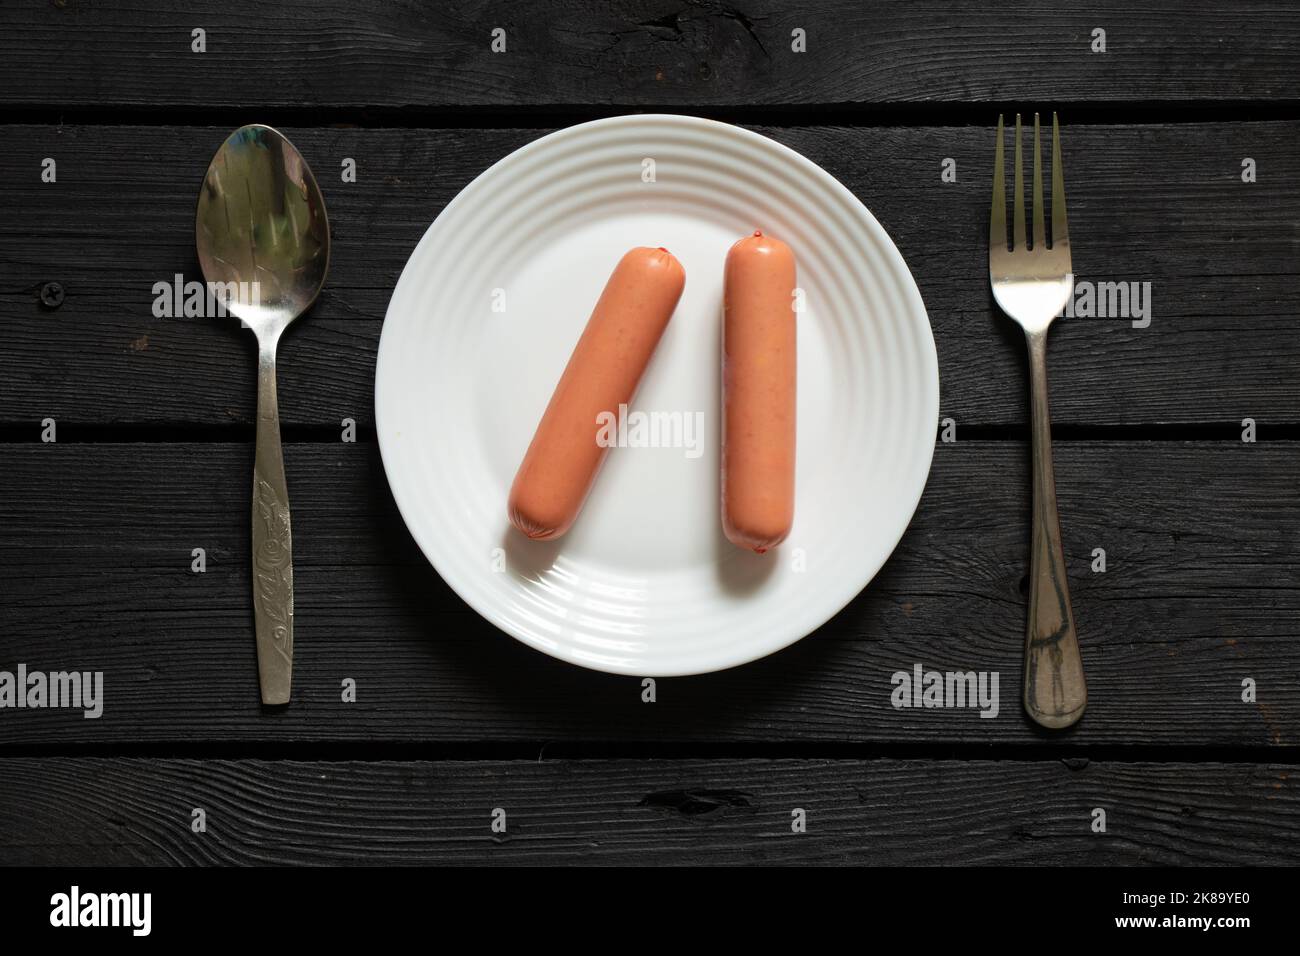 deux saucisses crues se trouvent sur une assiette blanche à côté d'une cuillère et d'une fourchette sur une table en bois noir, de la malbouffe, de la faim et de la pauvreté, des produits semi-finis Banque D'Images